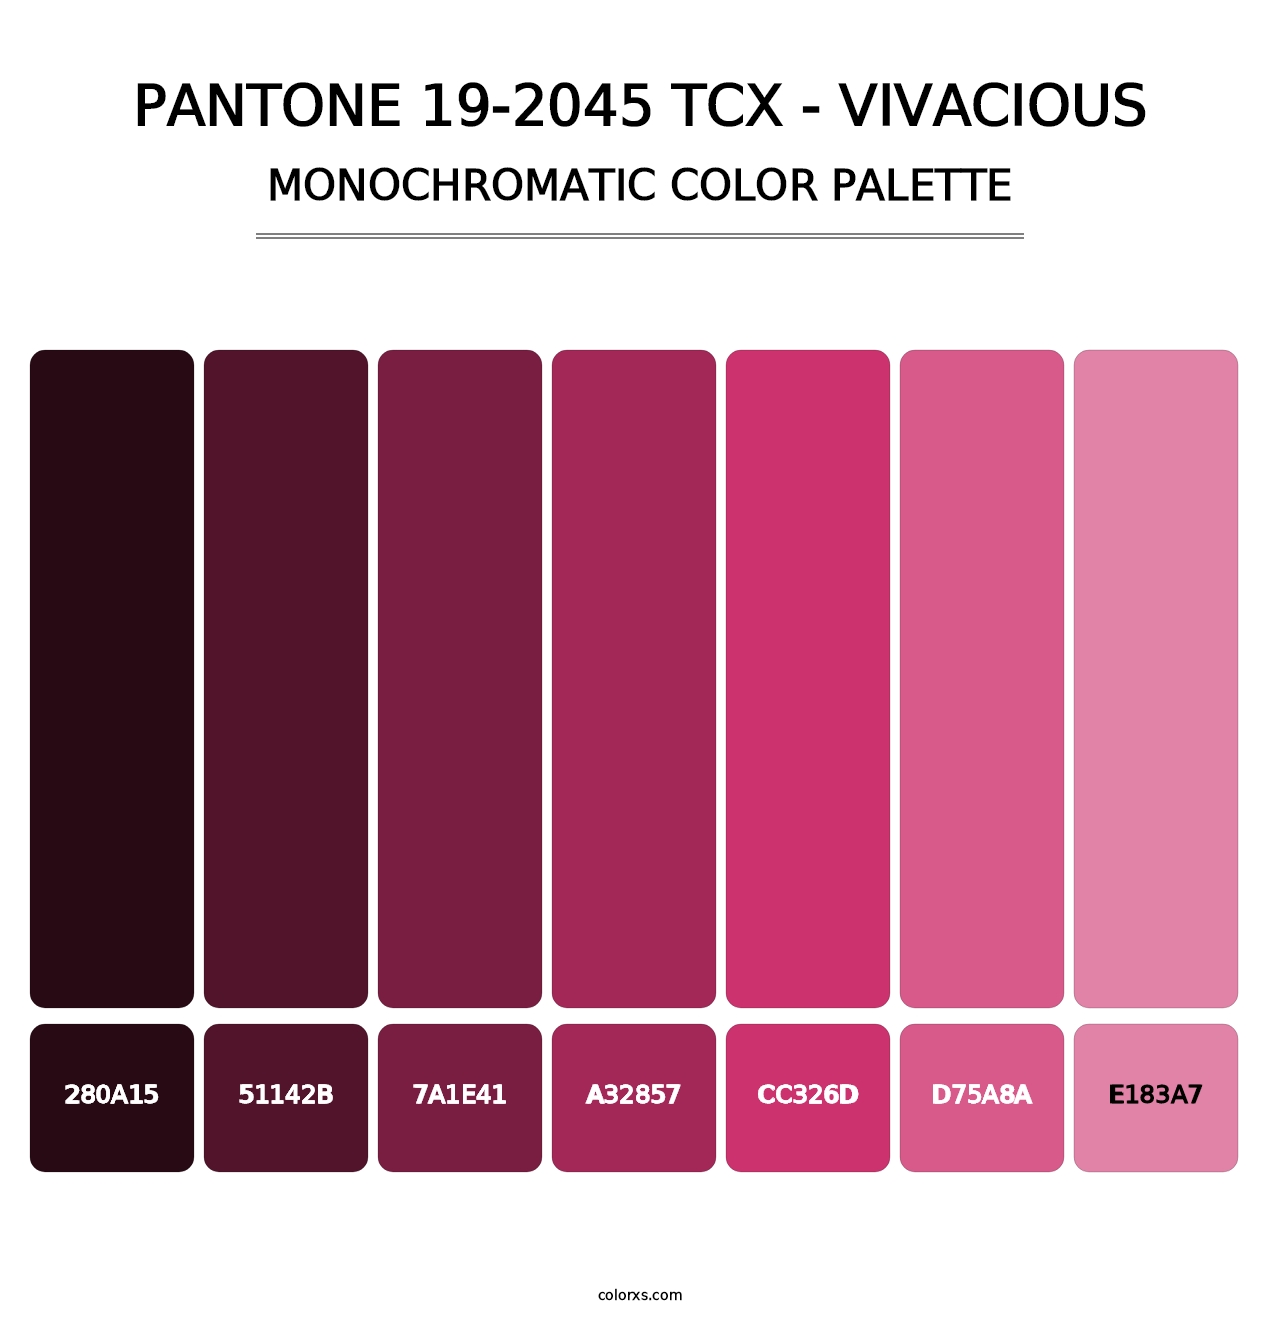 PANTONE 19-2045 TCX - Vivacious - Monochromatic Color Palette